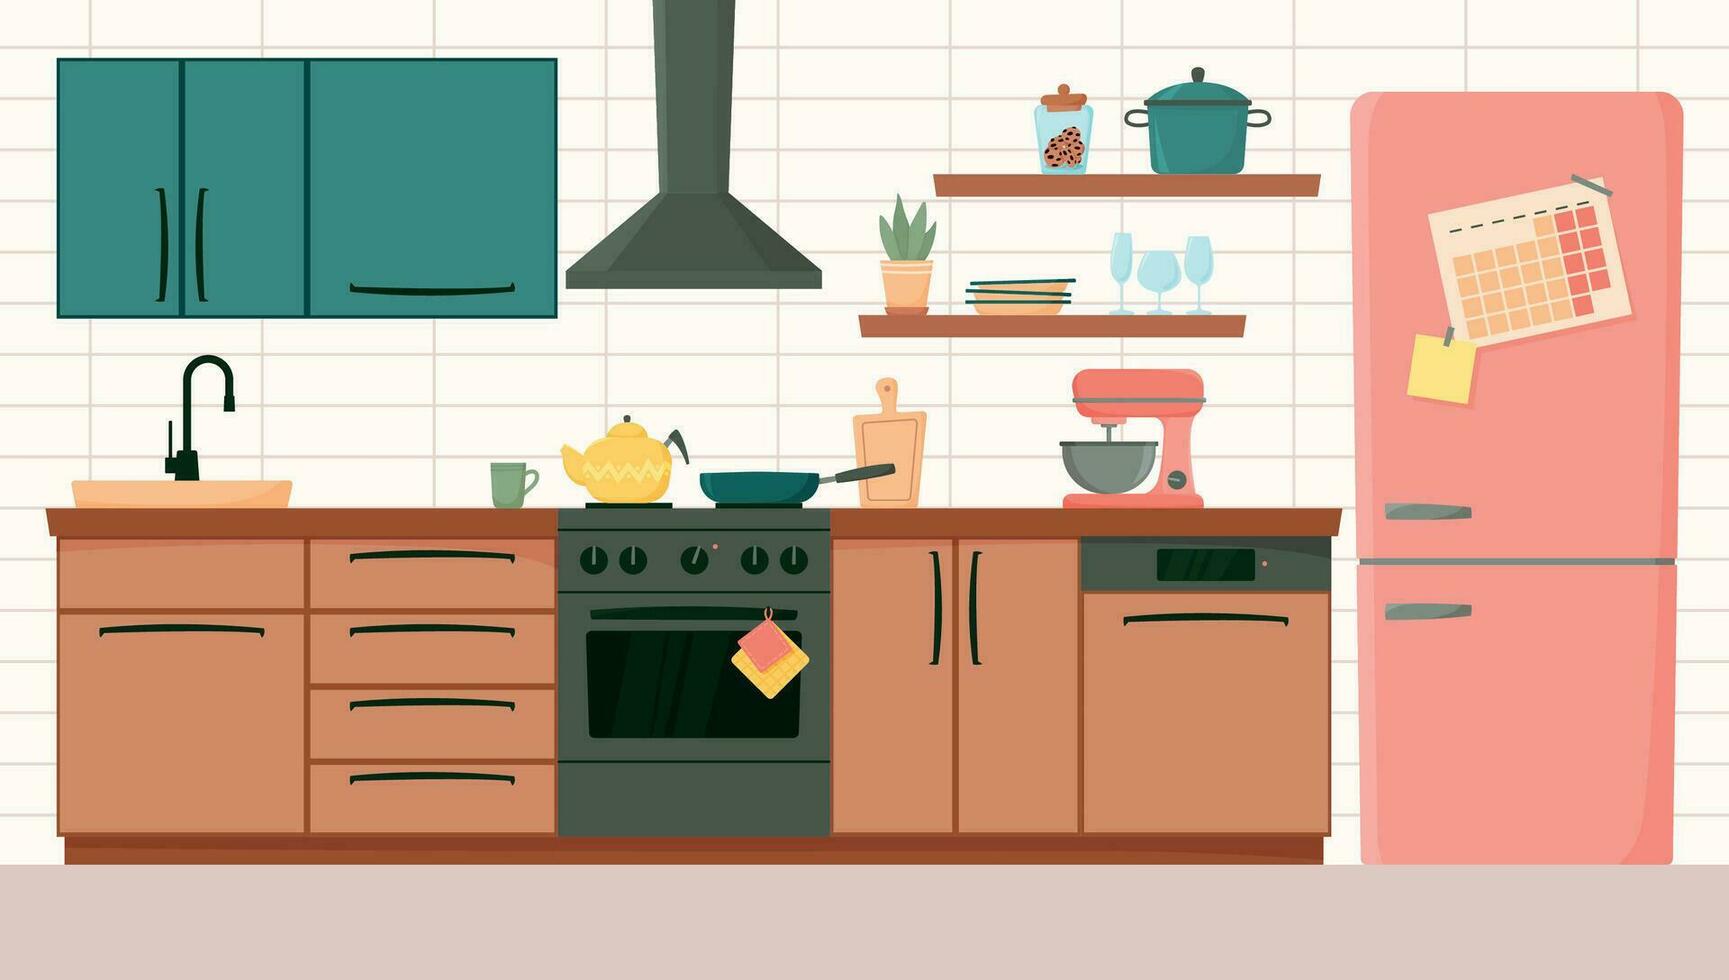 kök interiör med möbel och apparater främre se. Hem matlagning rum med kök skåp, kylskåp, spis, extraktor huva och köksutrustning i platt stil vektor